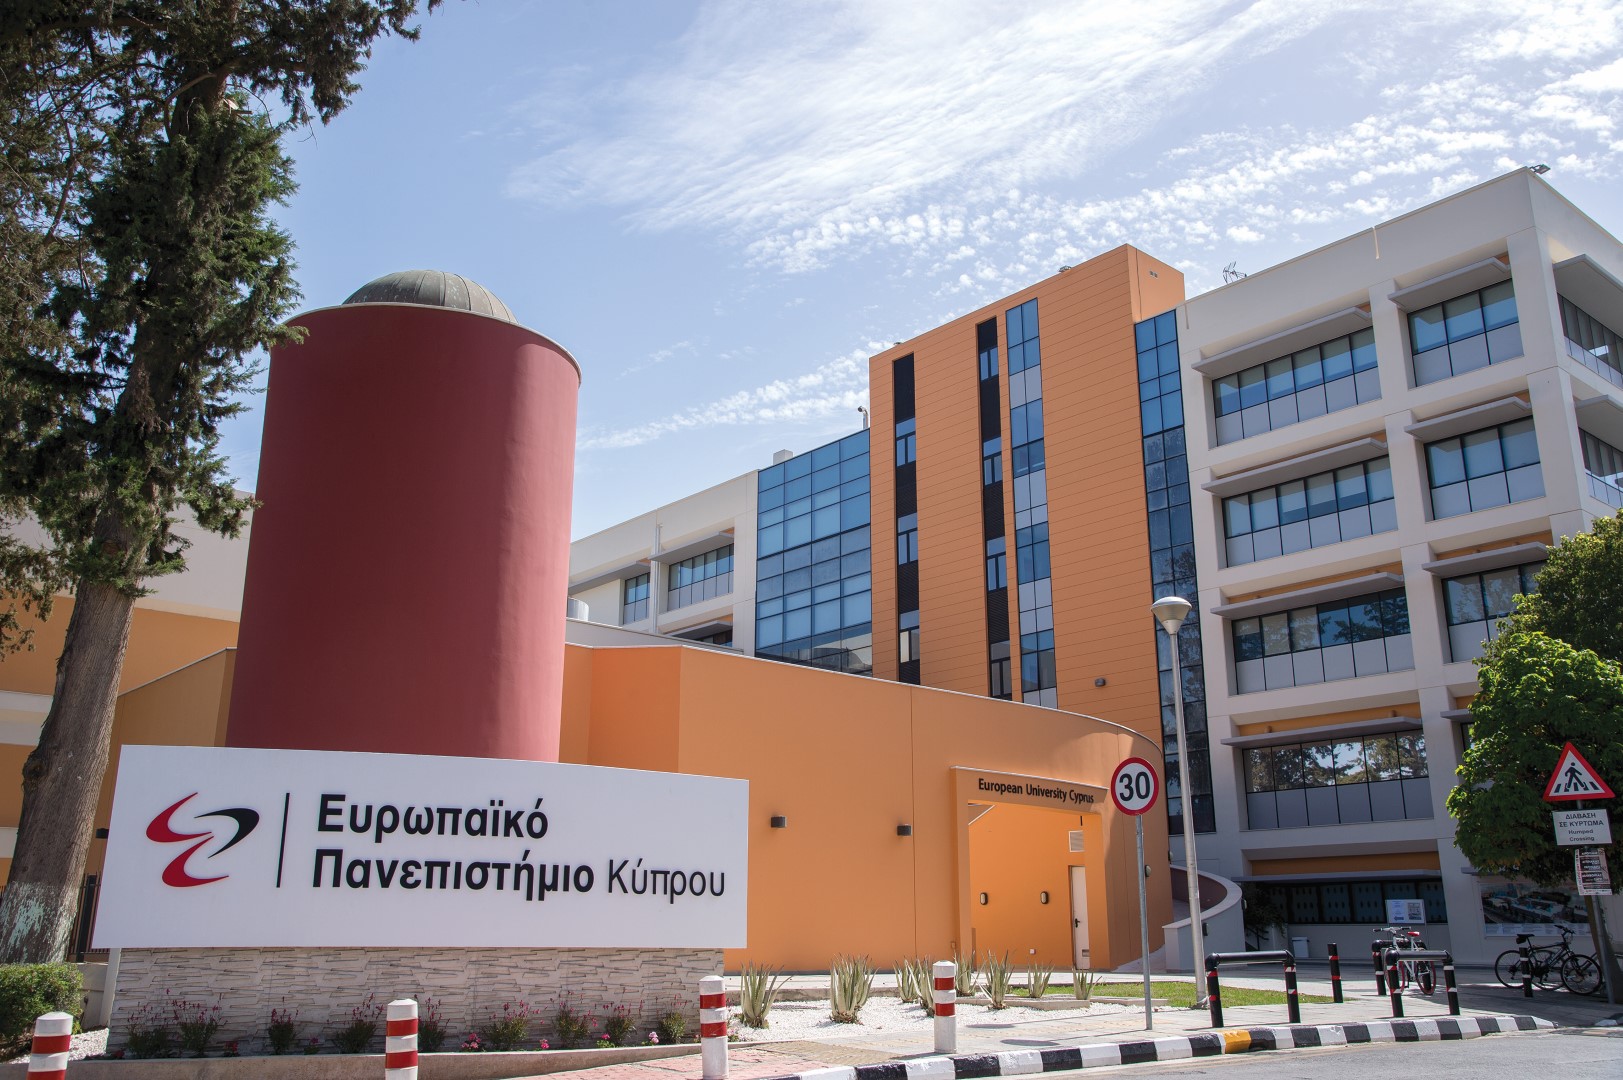 Ευρωπαϊκό Πανεπιστήμιο Κύπρου: ποιότητα-καινοτομία και ανάπτυξη